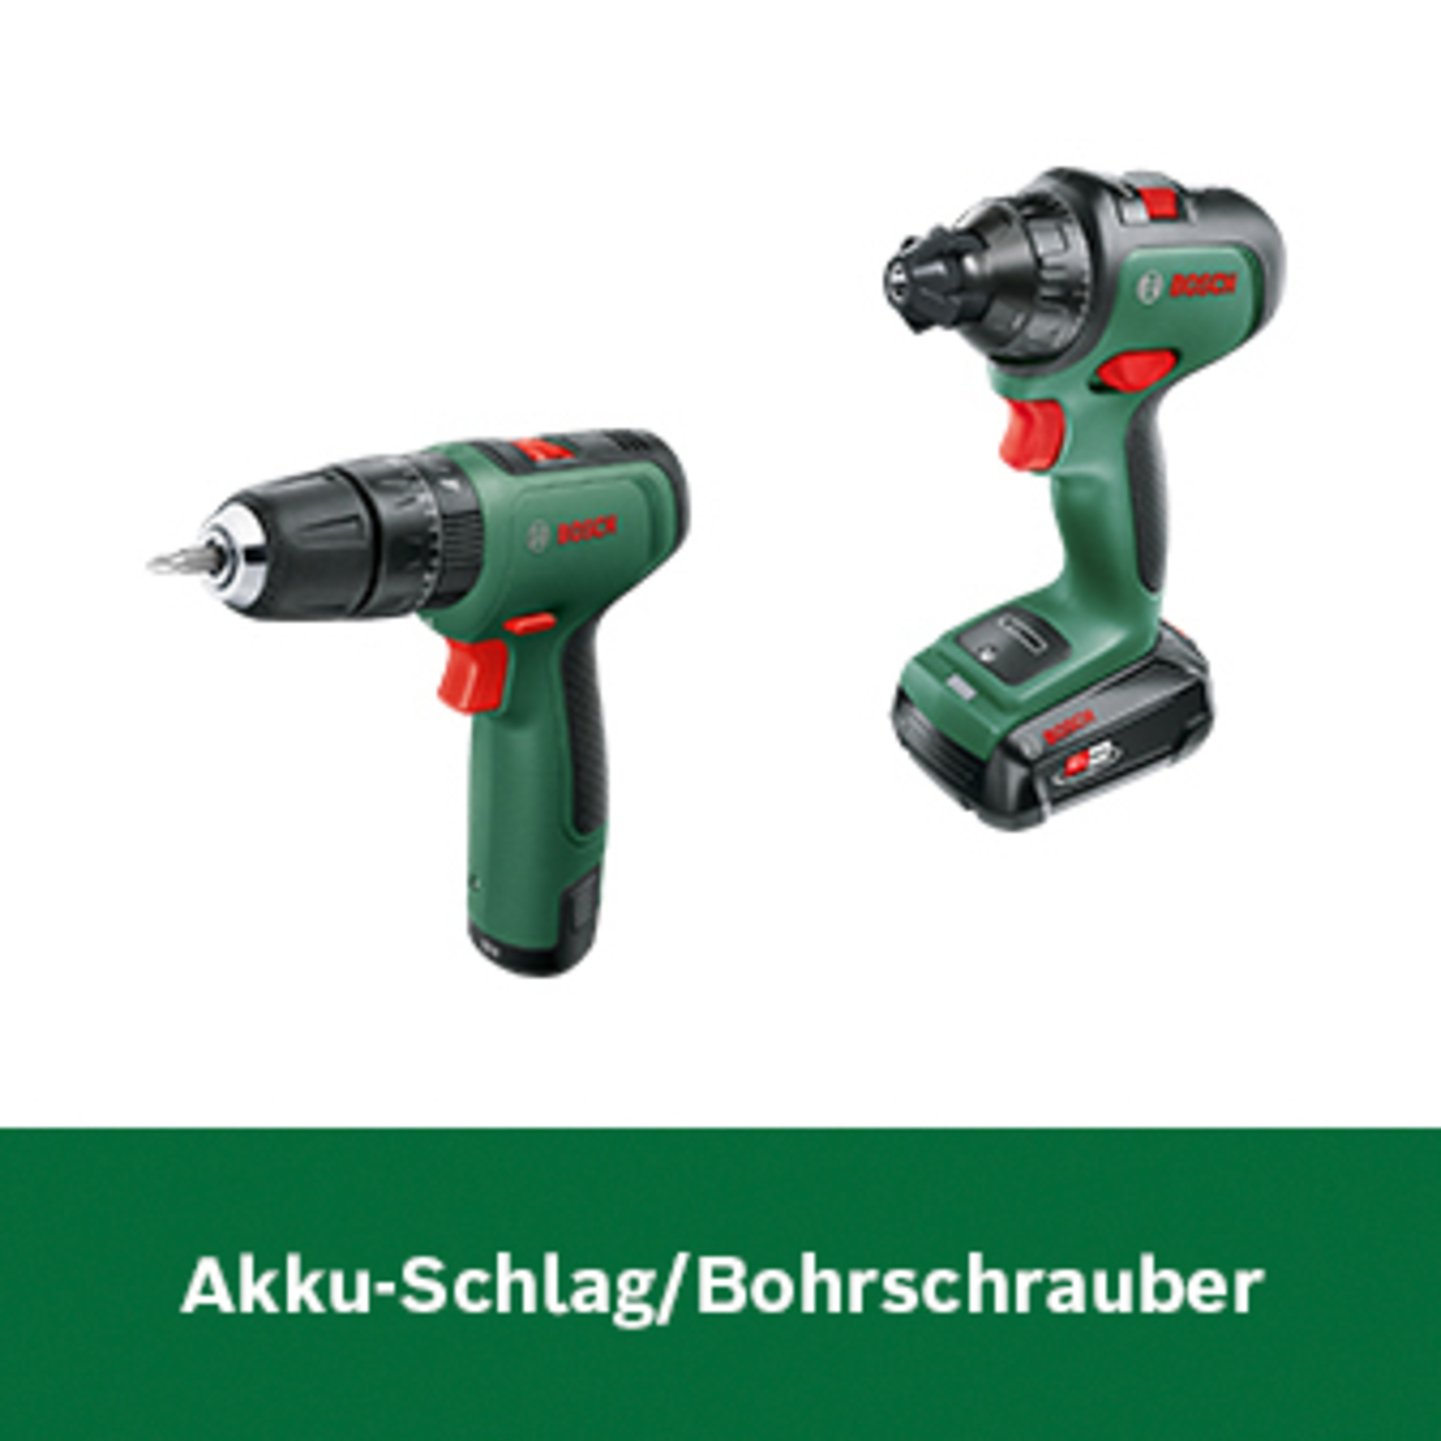 Bosch Akku-Schlag/Bohrschrauber